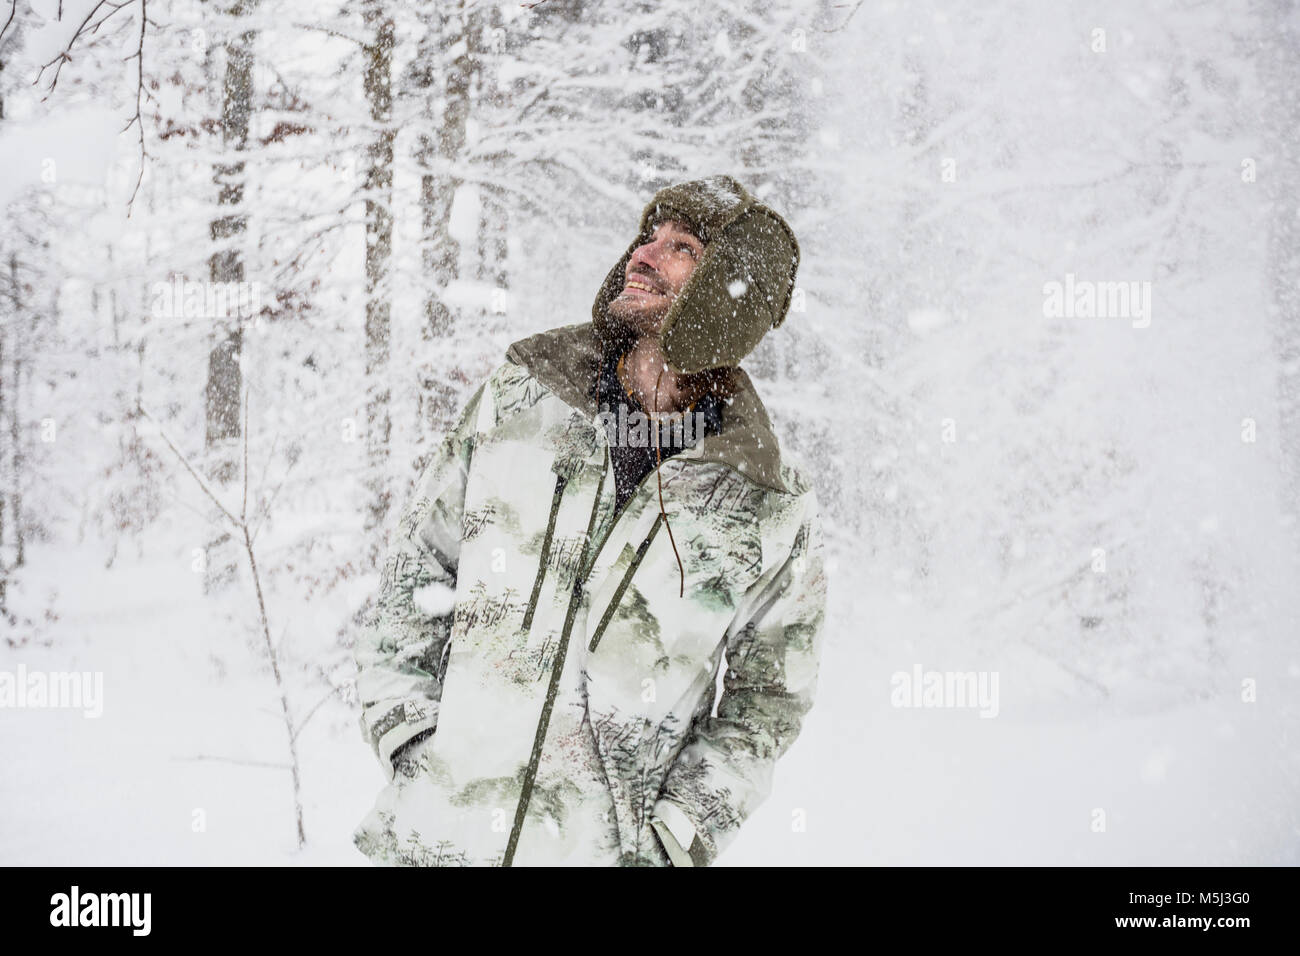 Glückliche Menschen in Camouflage Jacke im Winter Wald Stockfoto